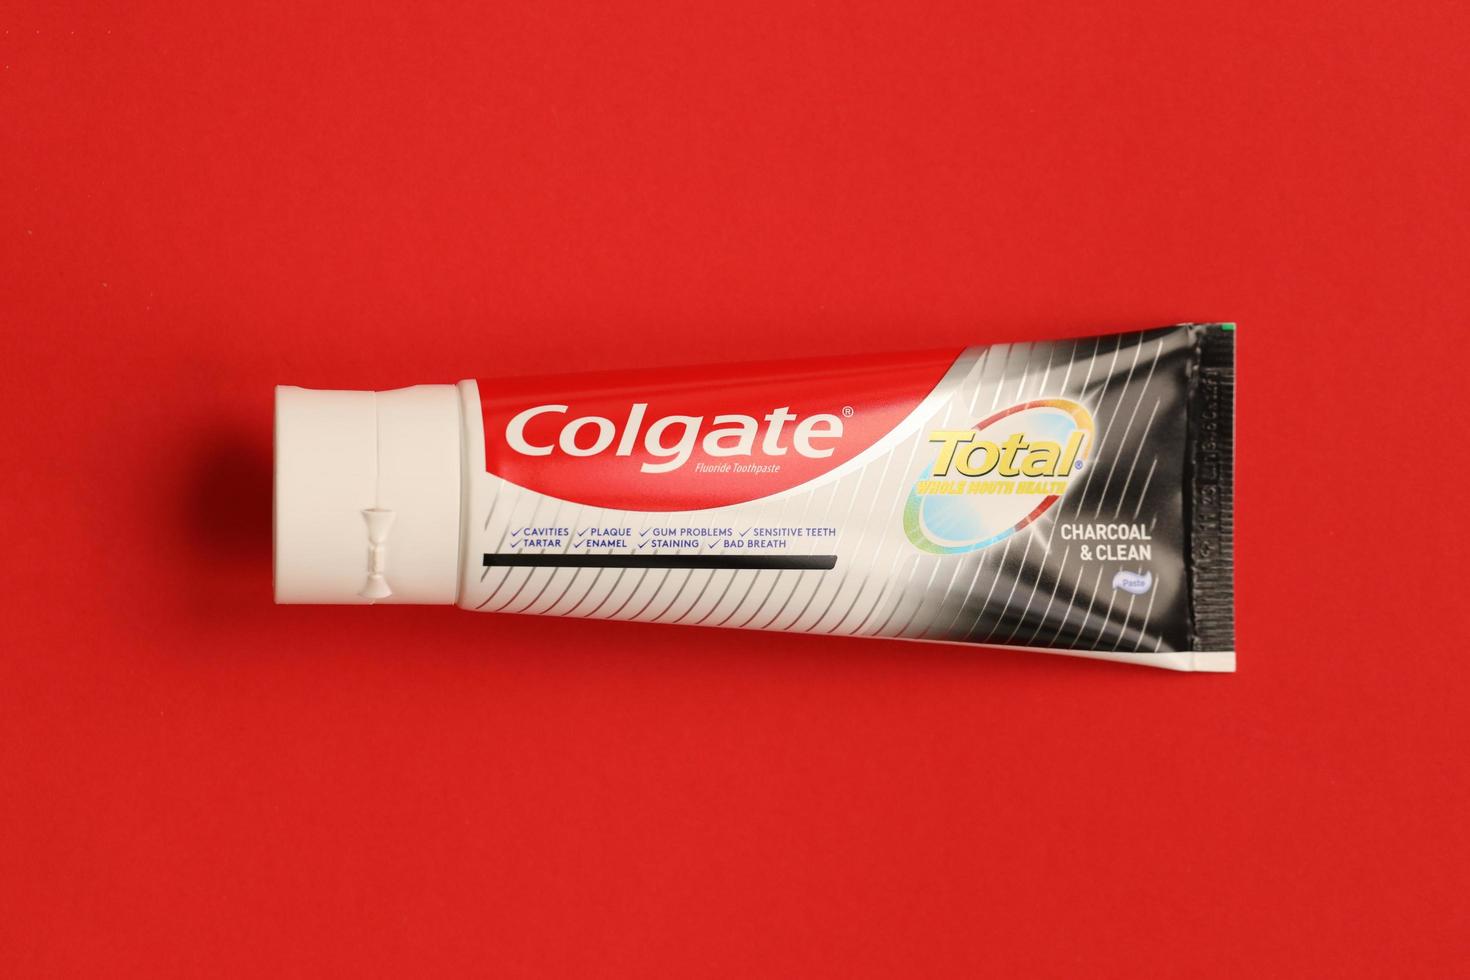 ternopil, ukraine - 23. juni 2022 colgate zahnpasta, eine marke von mundhygieneprodukten, die vom amerikanischen konsumgüterunternehmen colgate-palmolive hergestellt werden foto